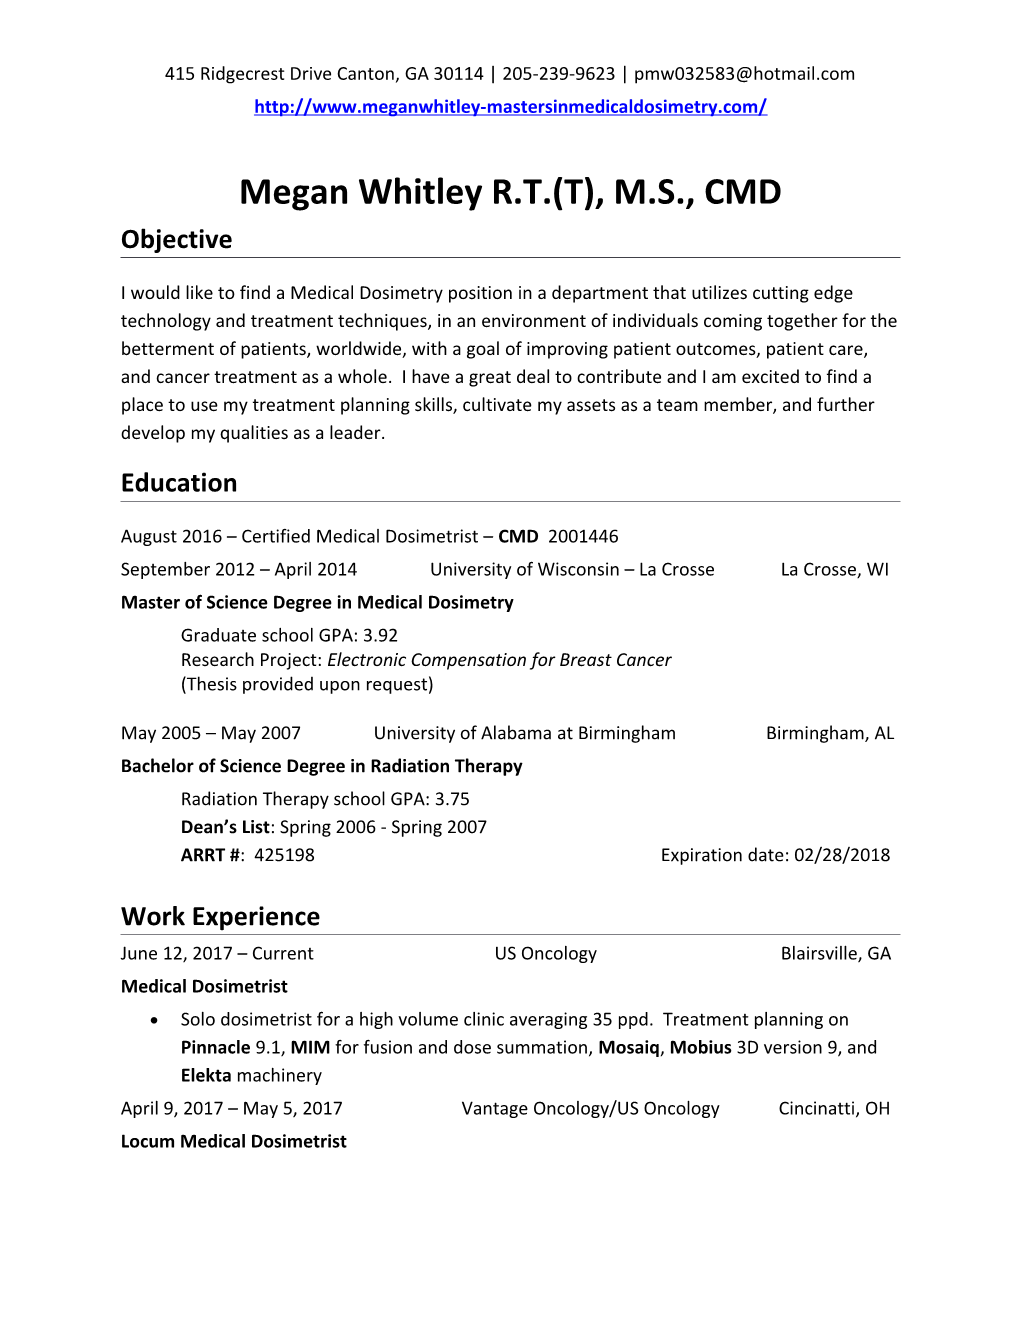 Megan Whitley R.T.(T), M.S., CMD